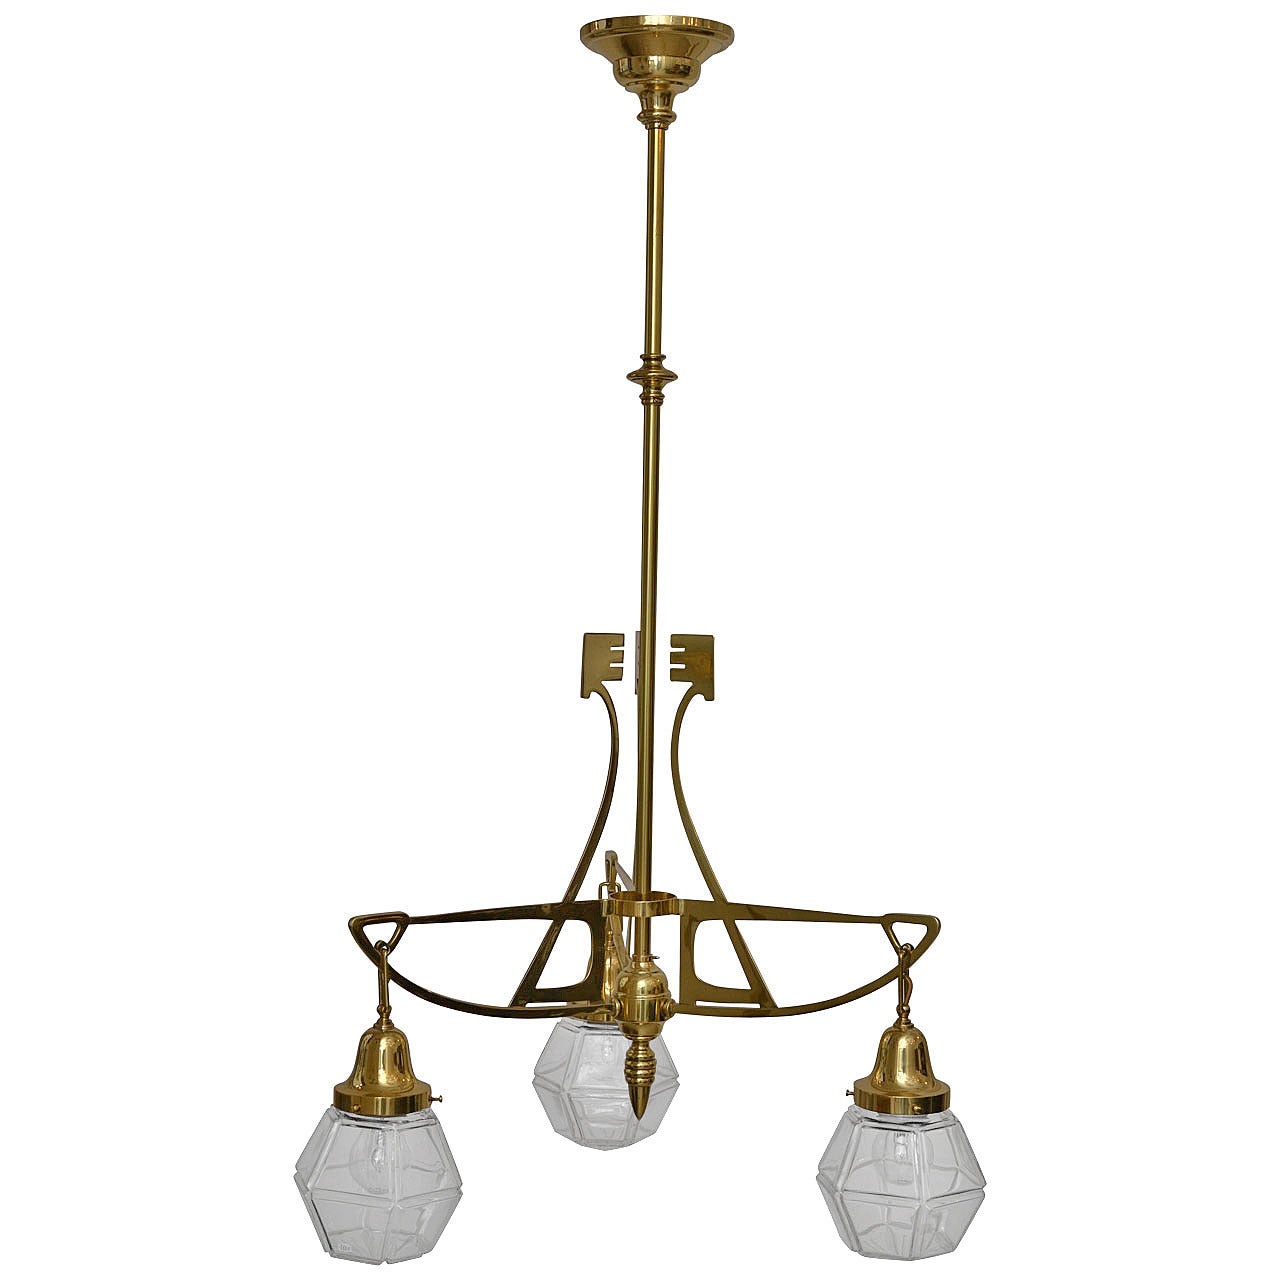 Art Nouveau Three-Light Ceiling Lamp with Original Glass Shade